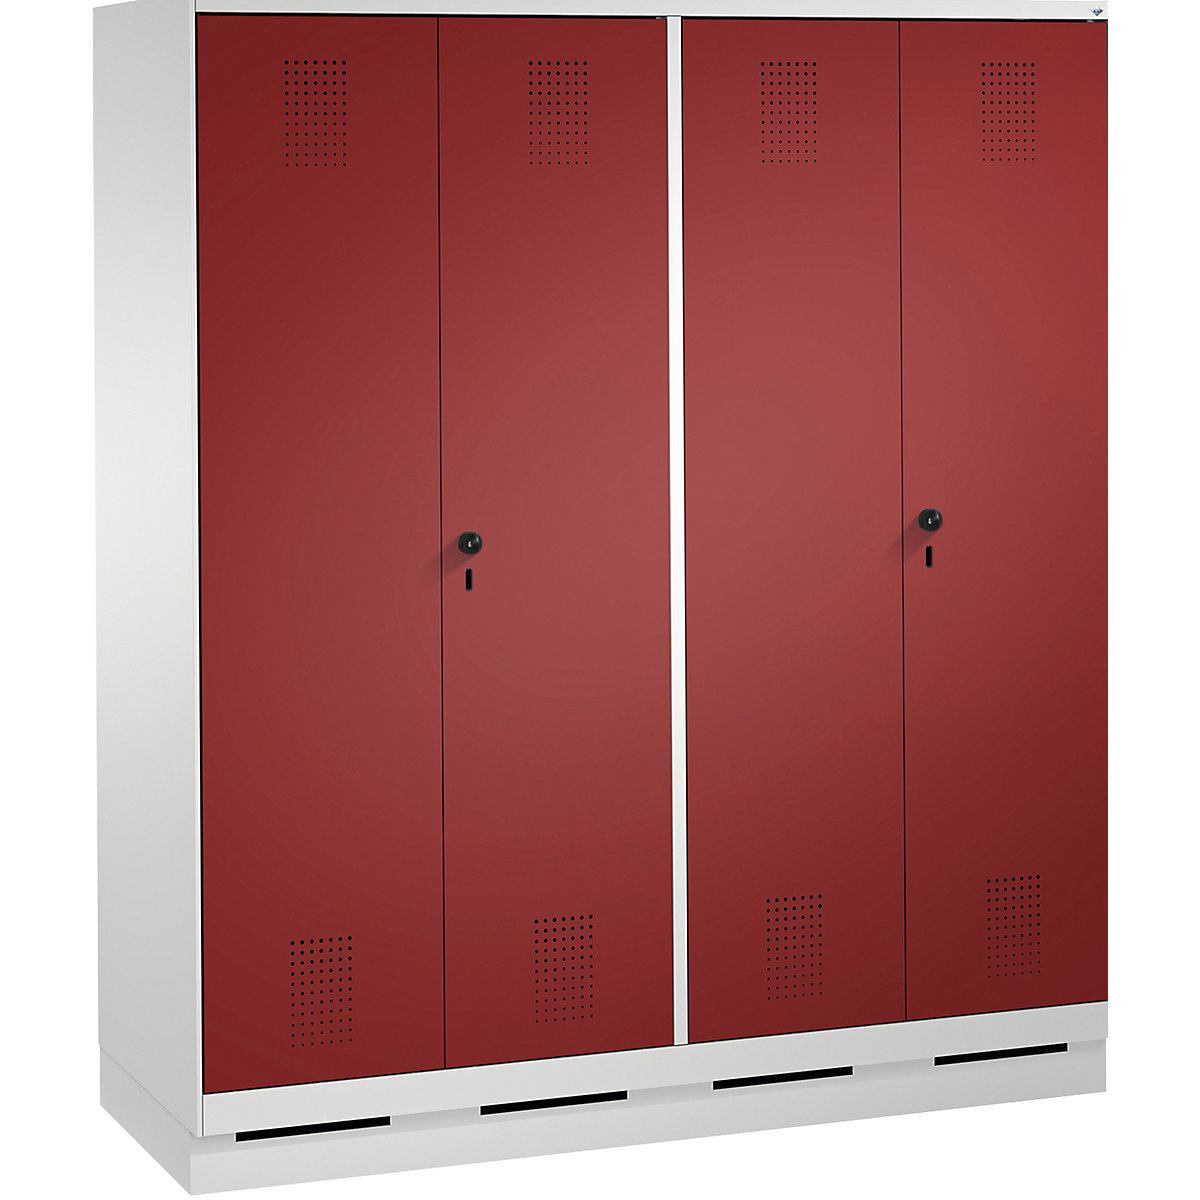 EVOLO öltözőszekrény, egymásra csukódó ajtók – C+P, 4 fülke, fülkeszélesség 400 mm, lábazattal, világosszürke / rubinvörös-12